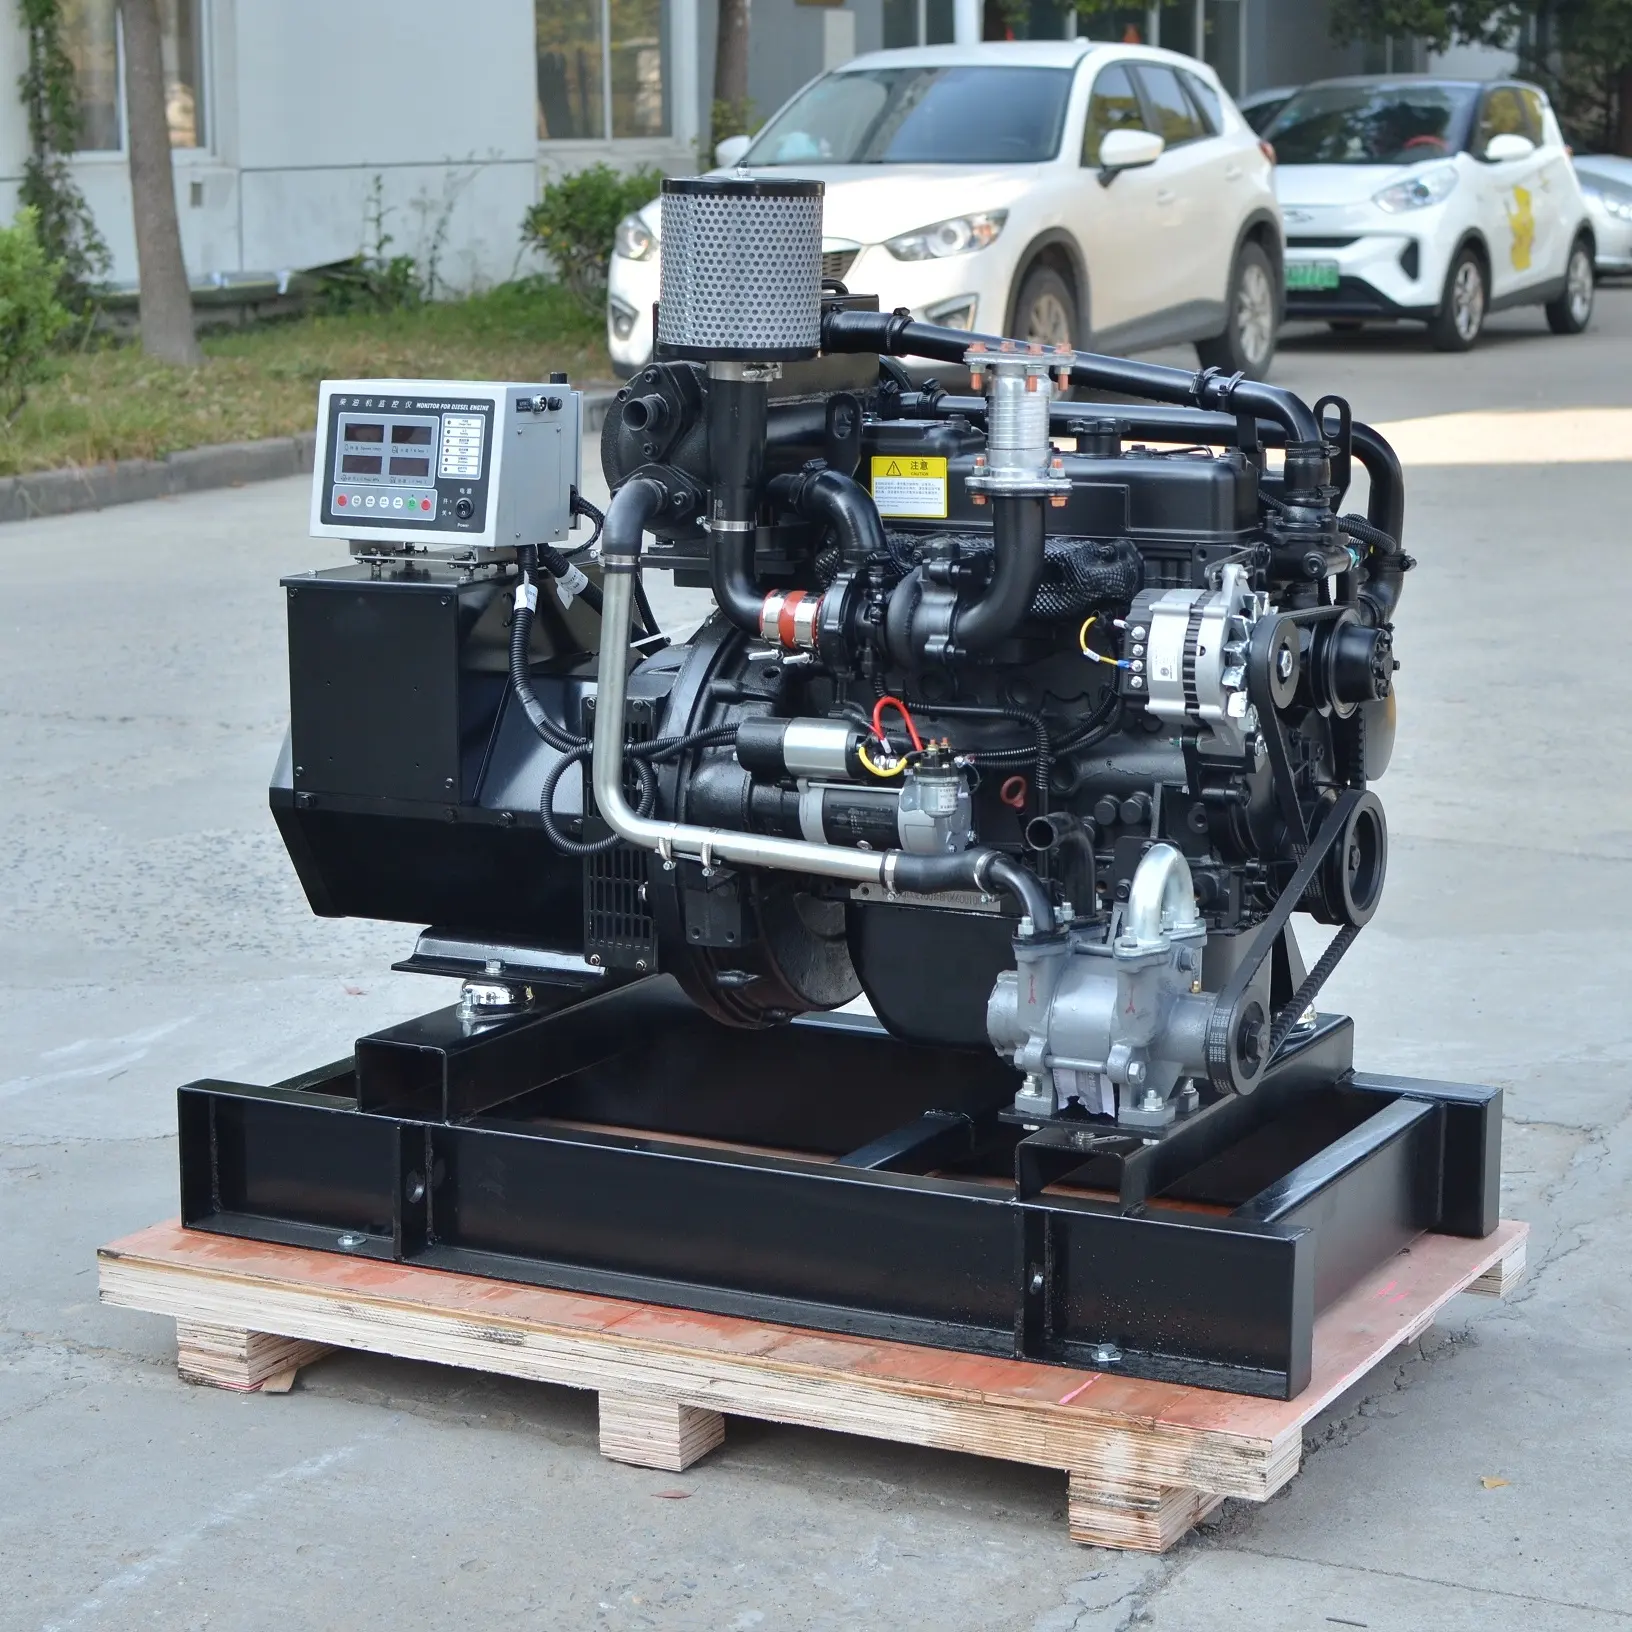 Поо, хорошая цена, сертификат CCS, дизельный двигатель WP2.3CD25E200, морской генератор Weichai 15 кВт